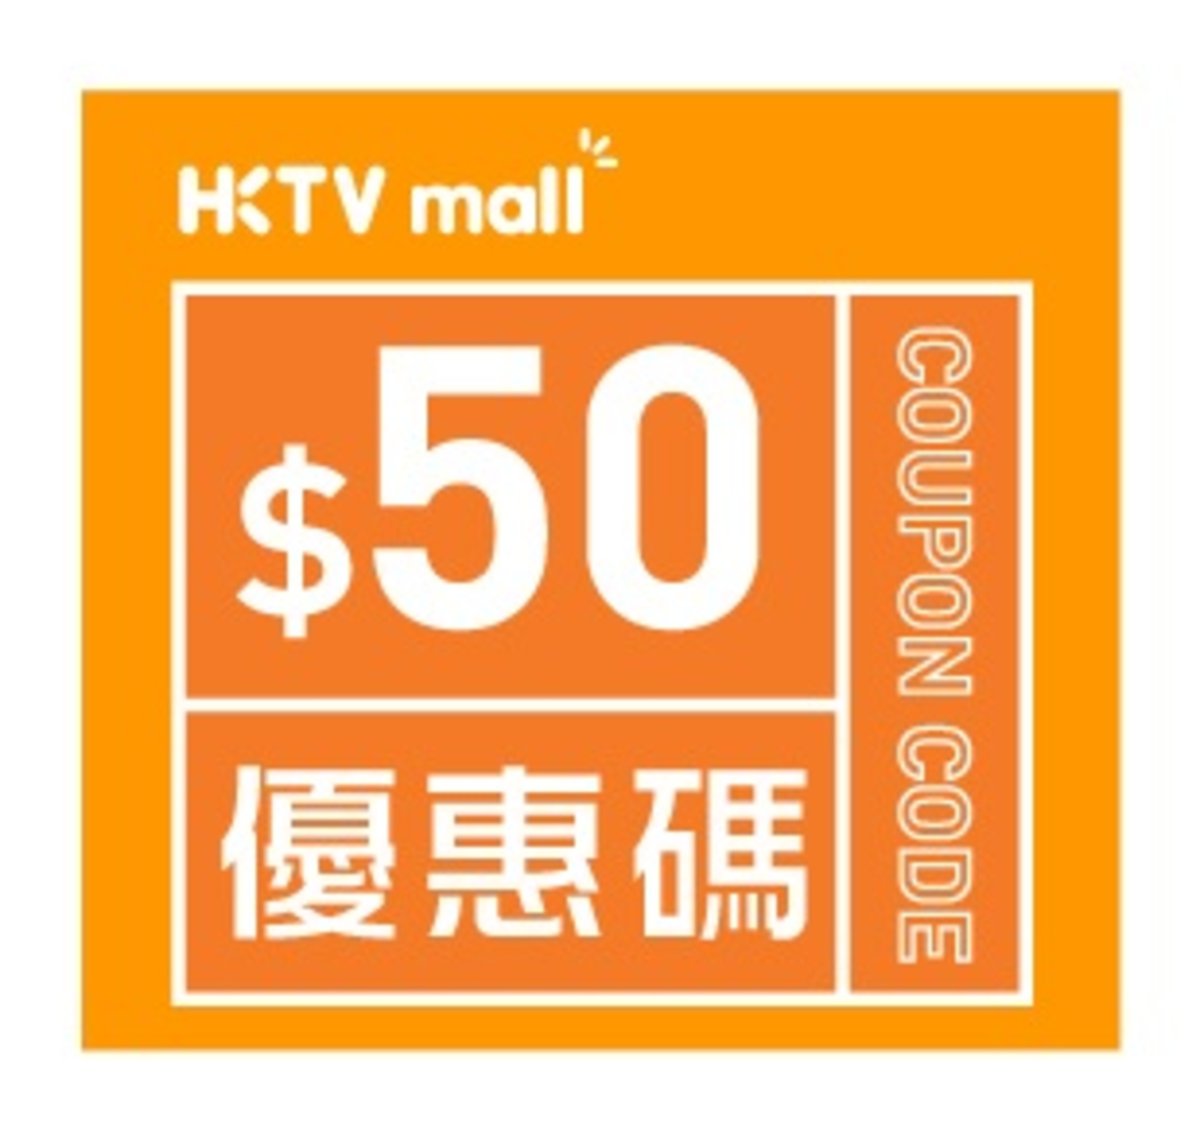 HKTVmall $50購物優惠碼 [有效日期： 2020.06.01 - 2020.12.31]